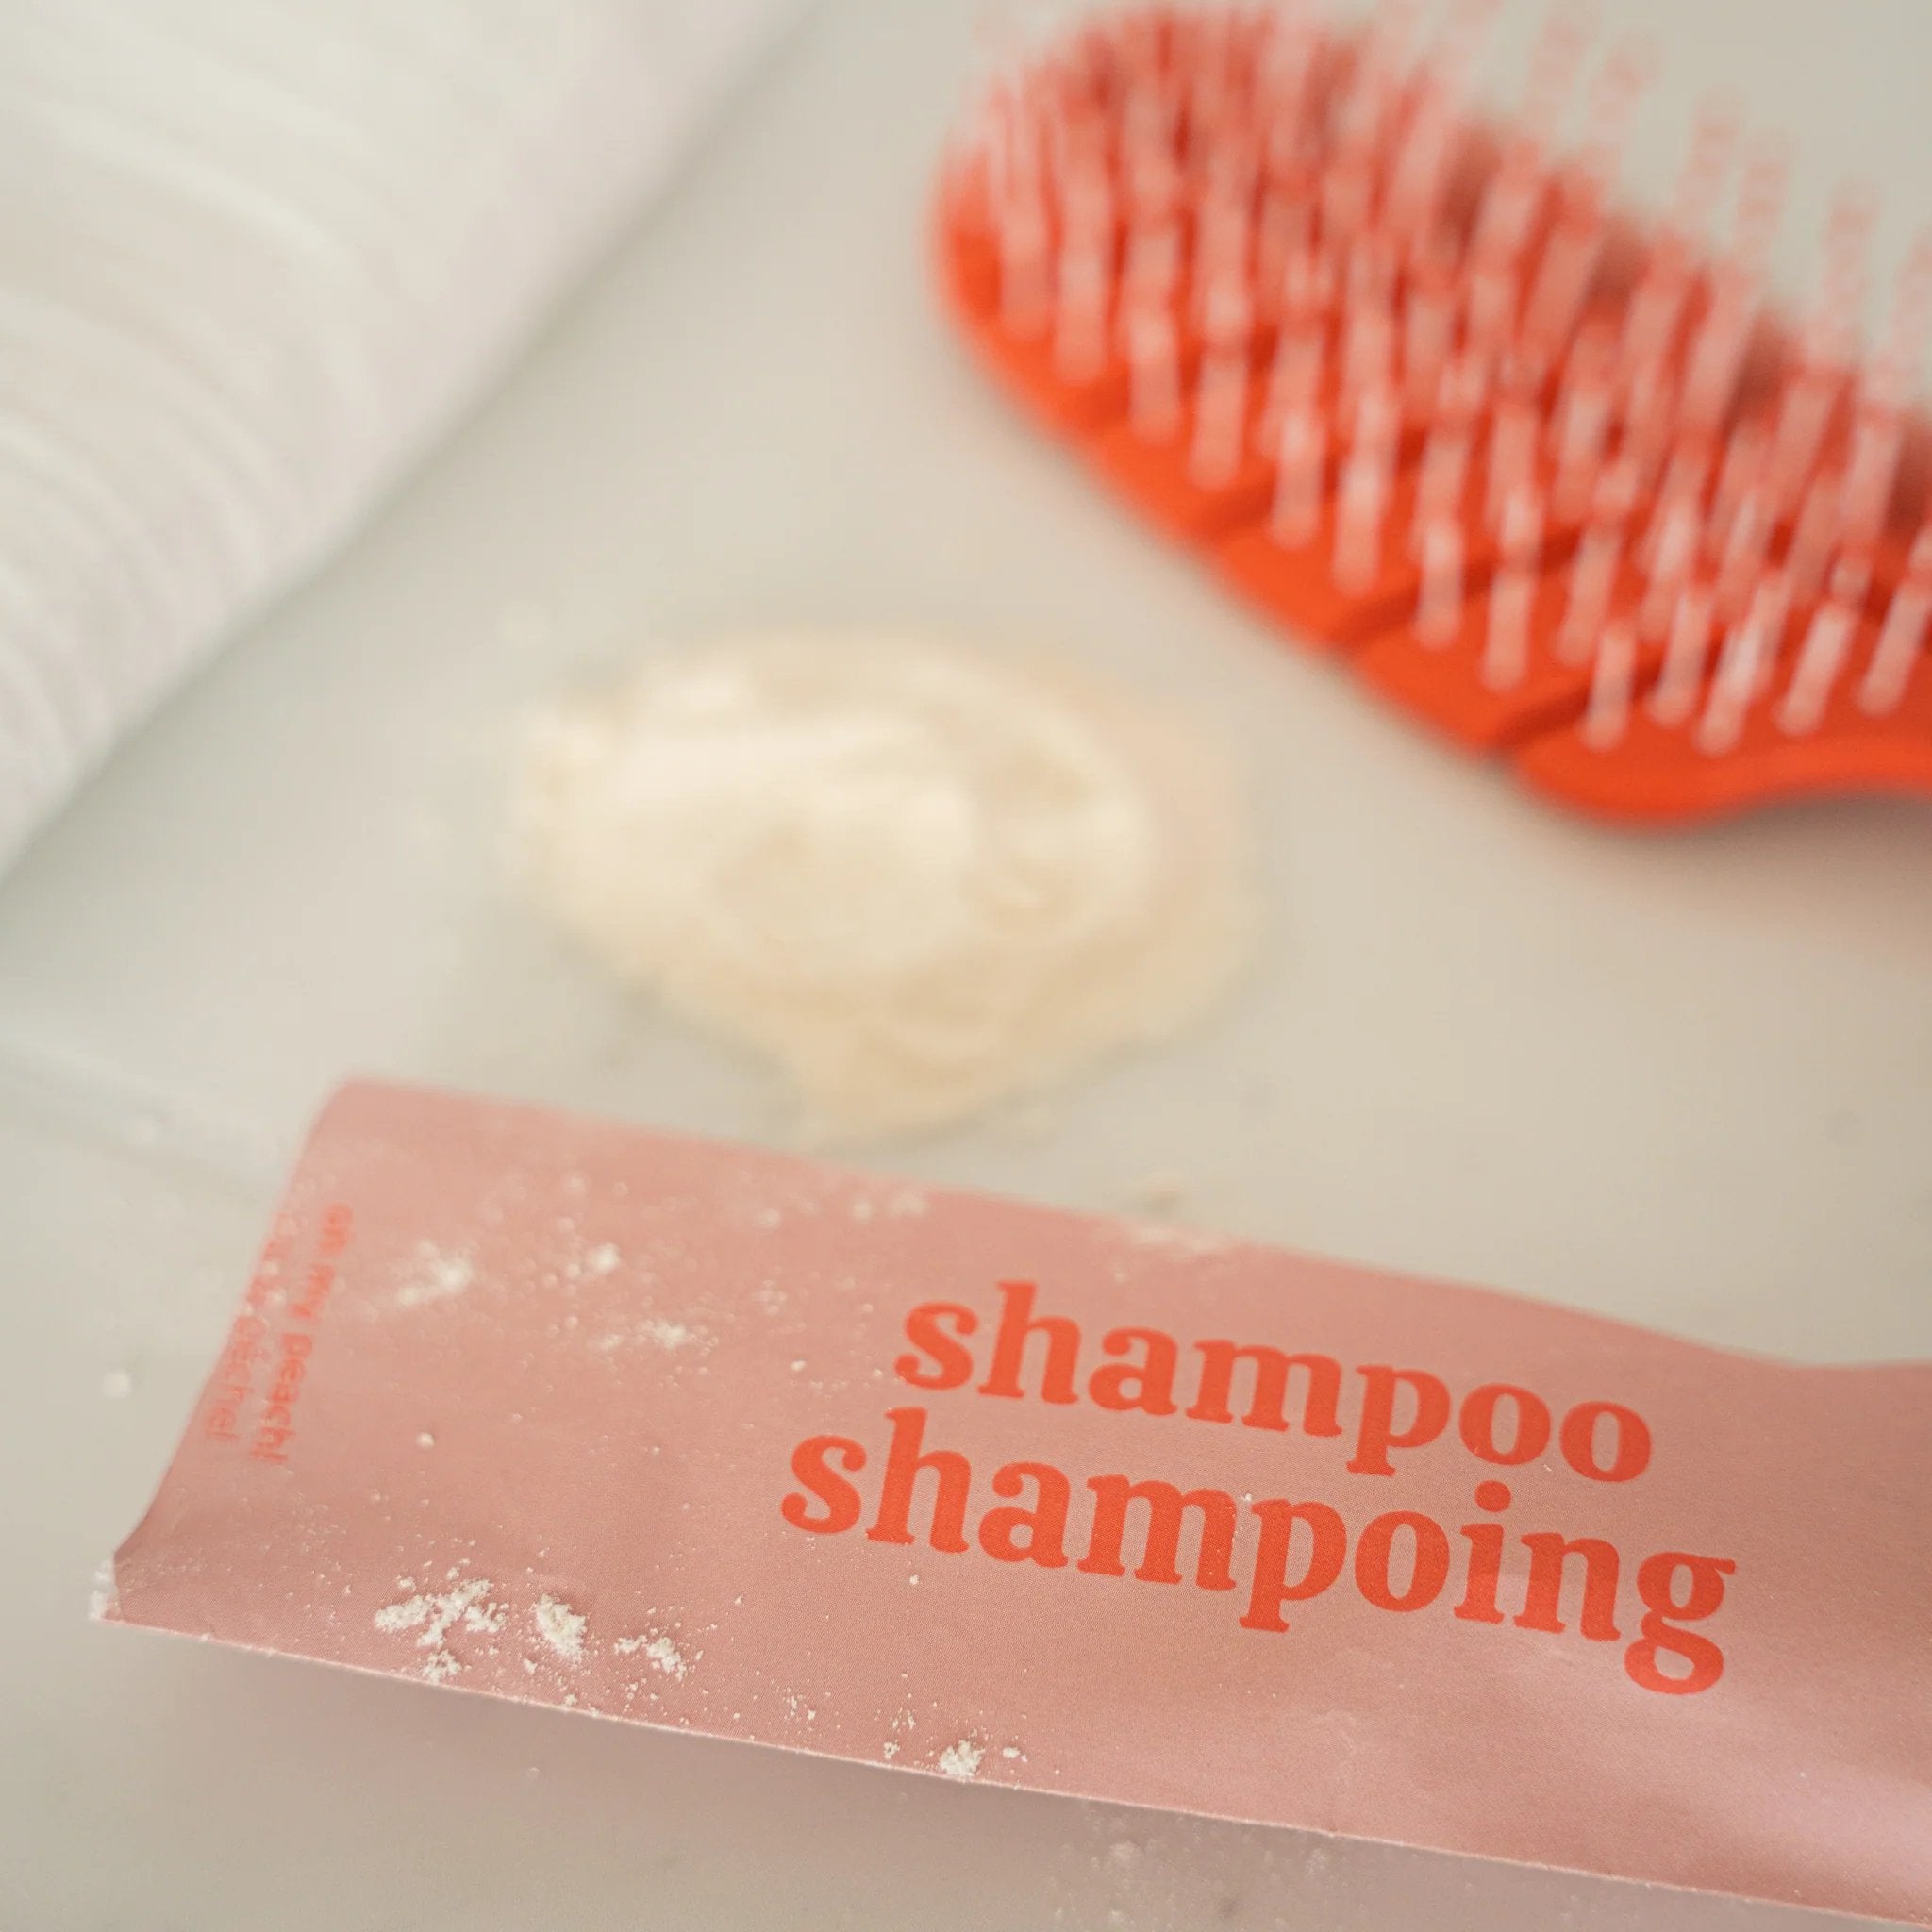 Myni. Recharge Shampoing - J'ai La Pêche! - Concept C. Shop